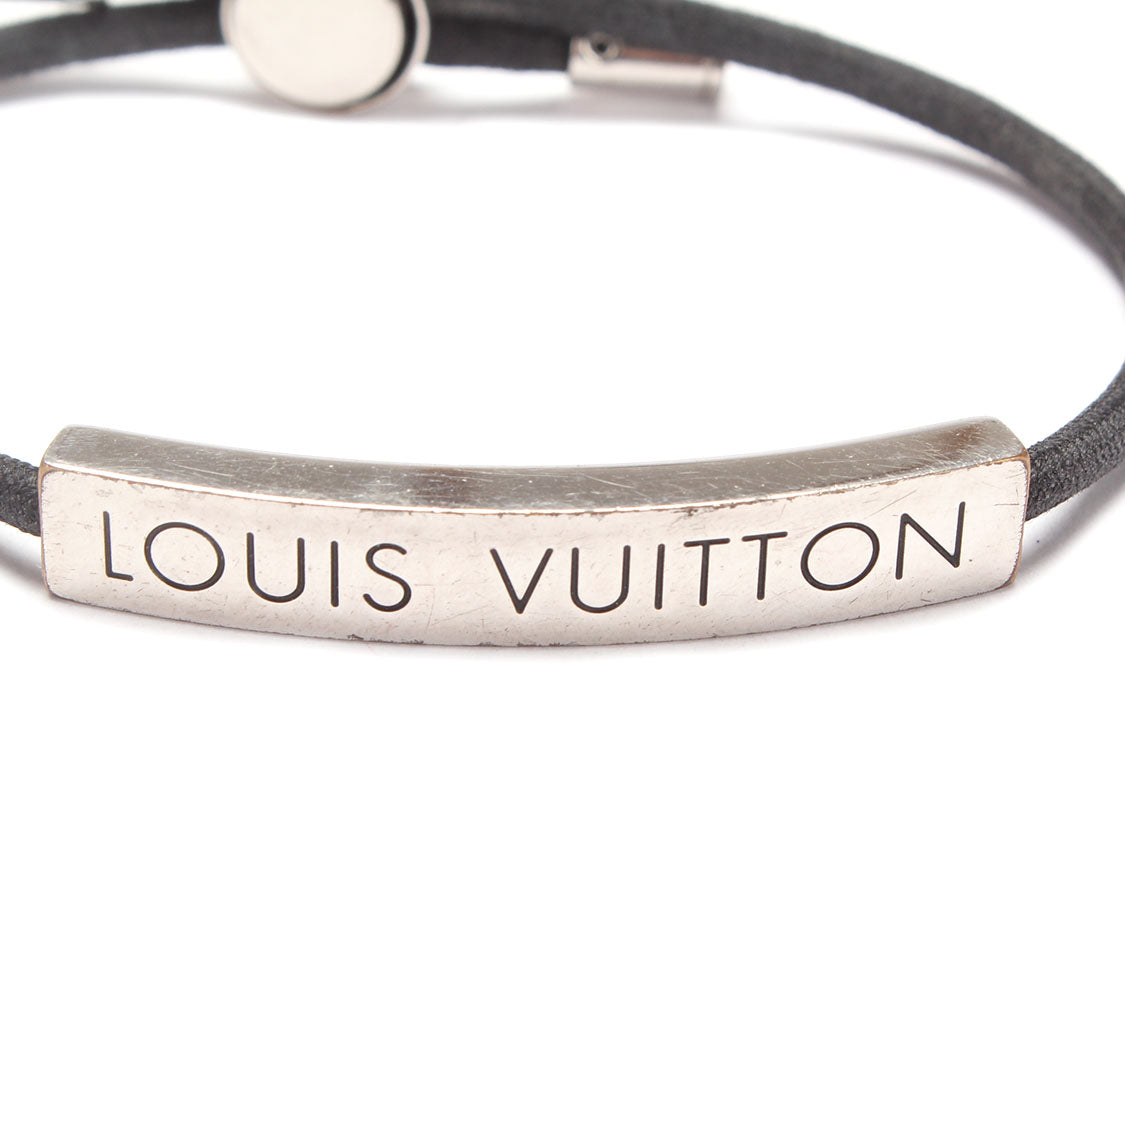 LOUIS VUITTON space LV bracelet M67417